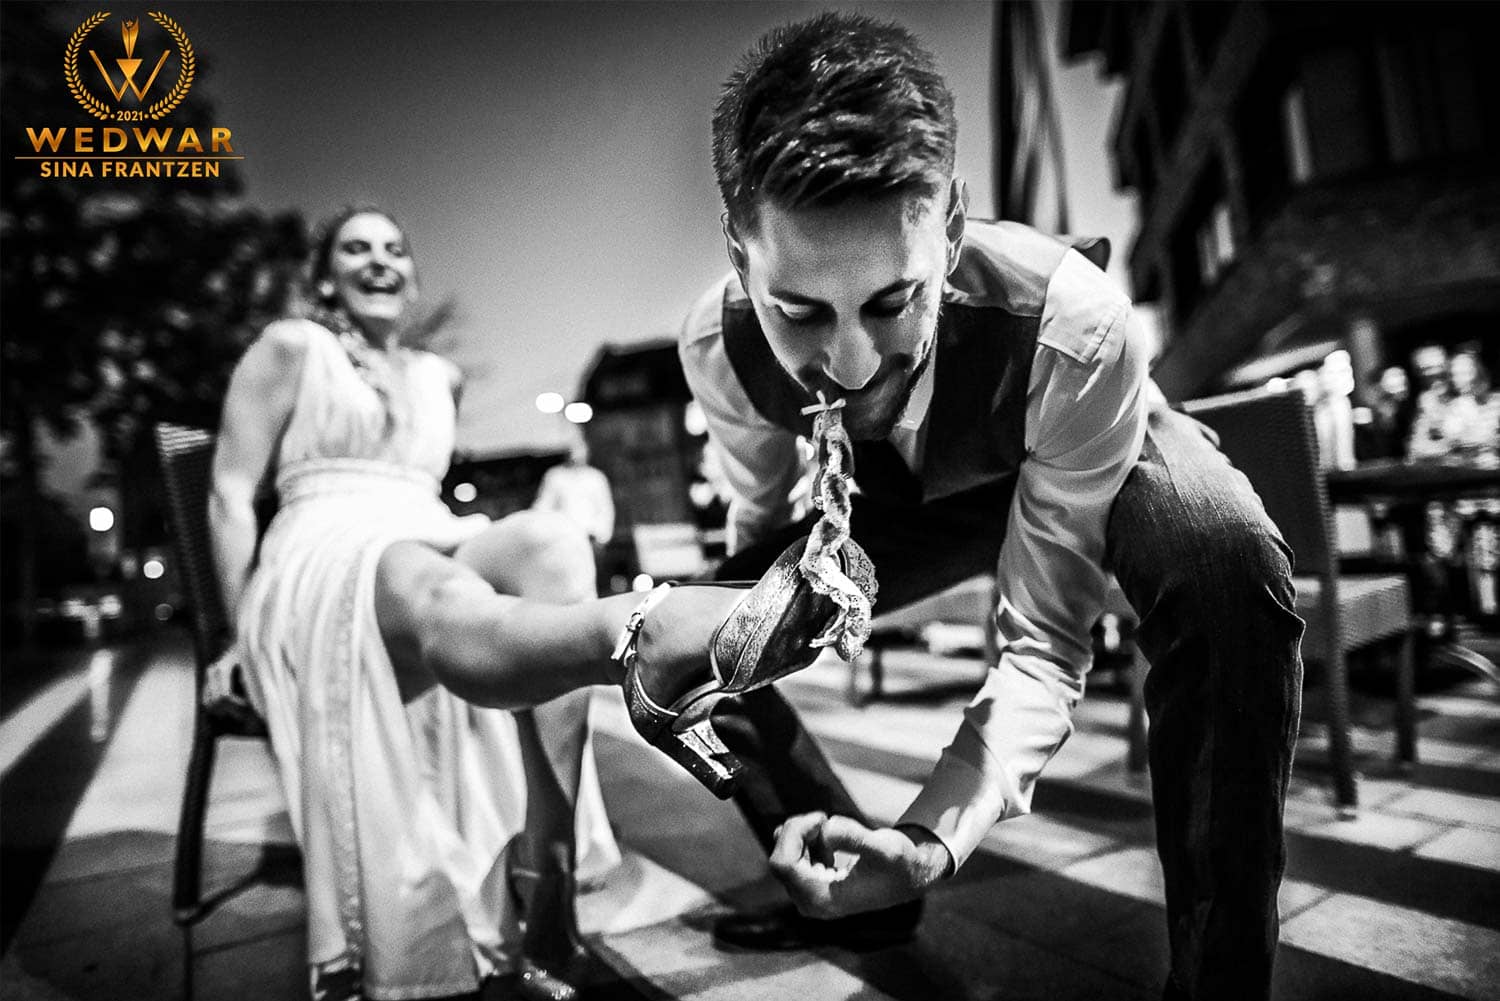 Bräutigam ergattert mit den Zähnen das Strumpfband seiner Braut - Gewinnerbild Wedwar Award - Hochzeitsfotografin Sina Frantzen bildsprache Remscheid